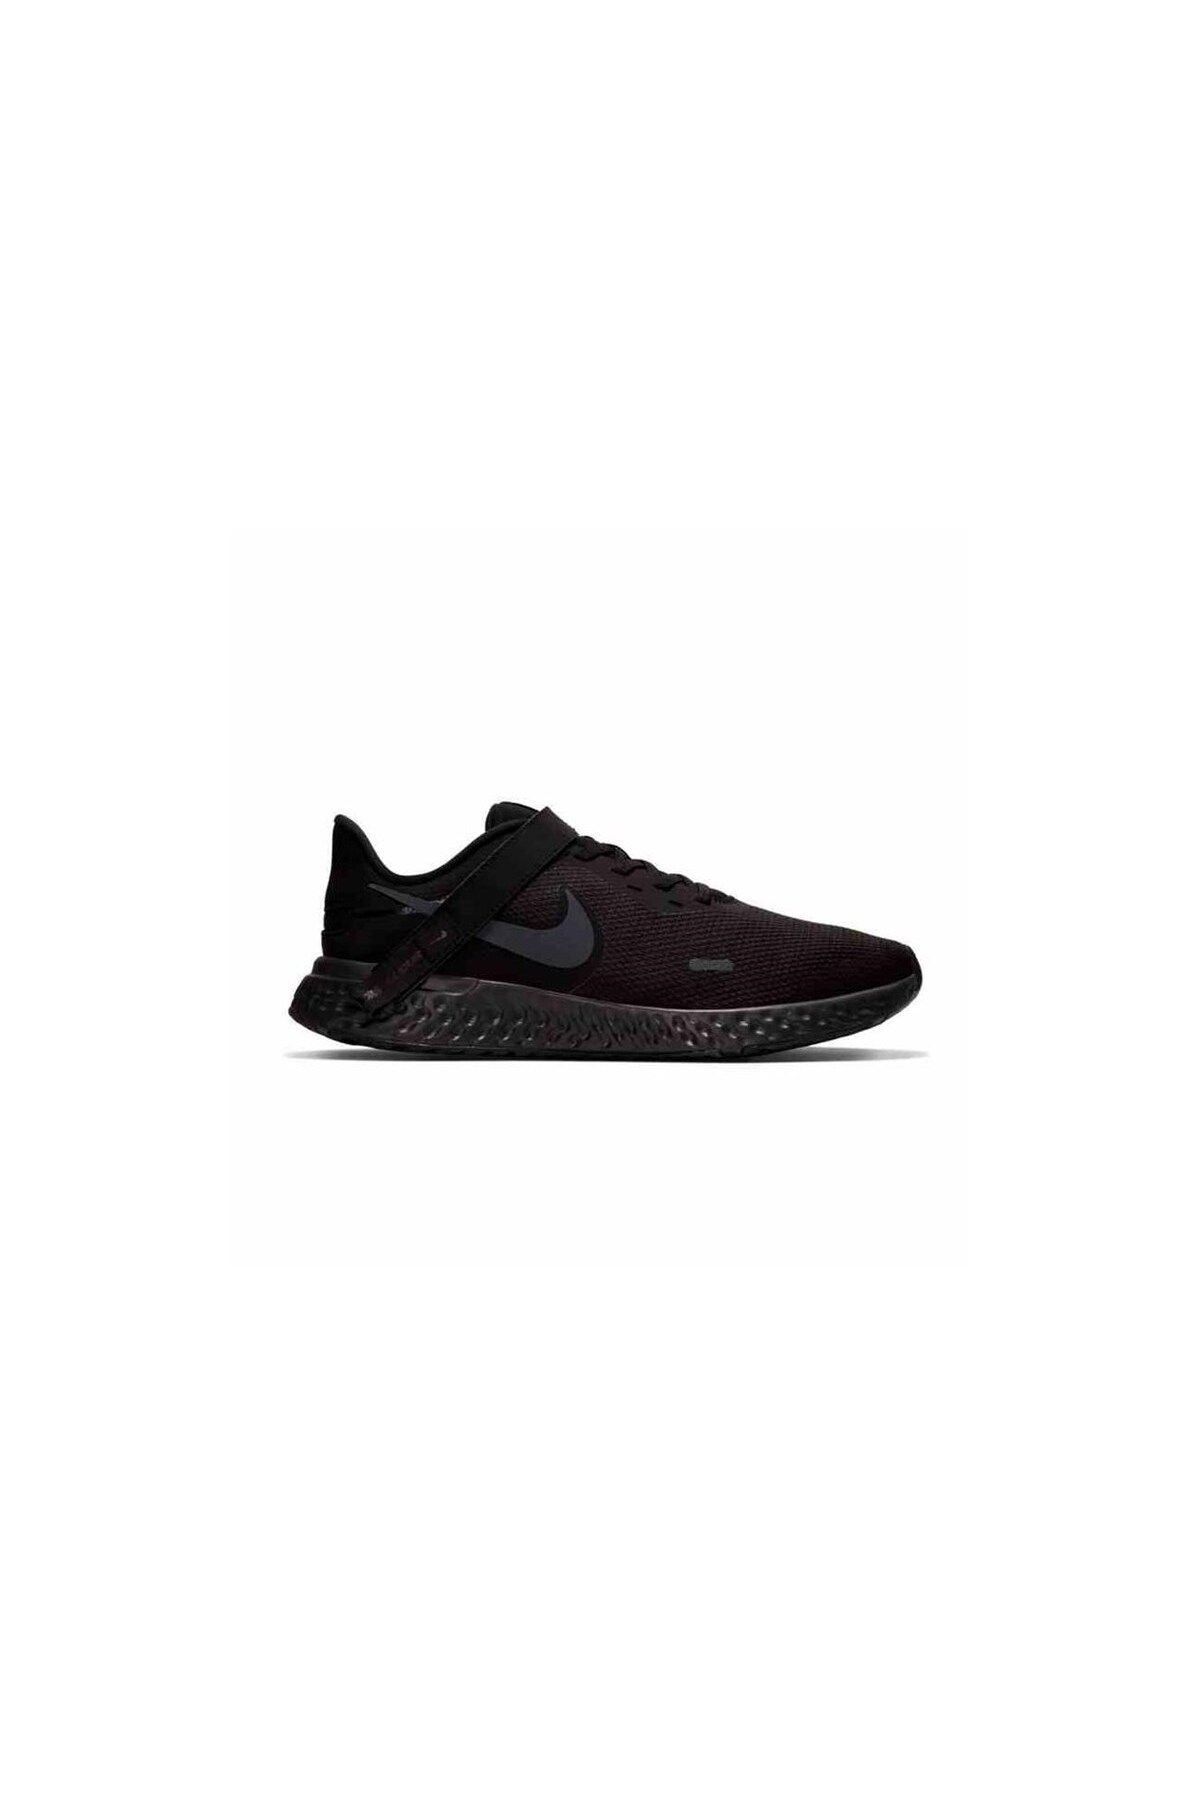 Nike Revolutıon 5 Flyease Erkek Yürüyüş Koşu Ayakkabı Bq3211-001